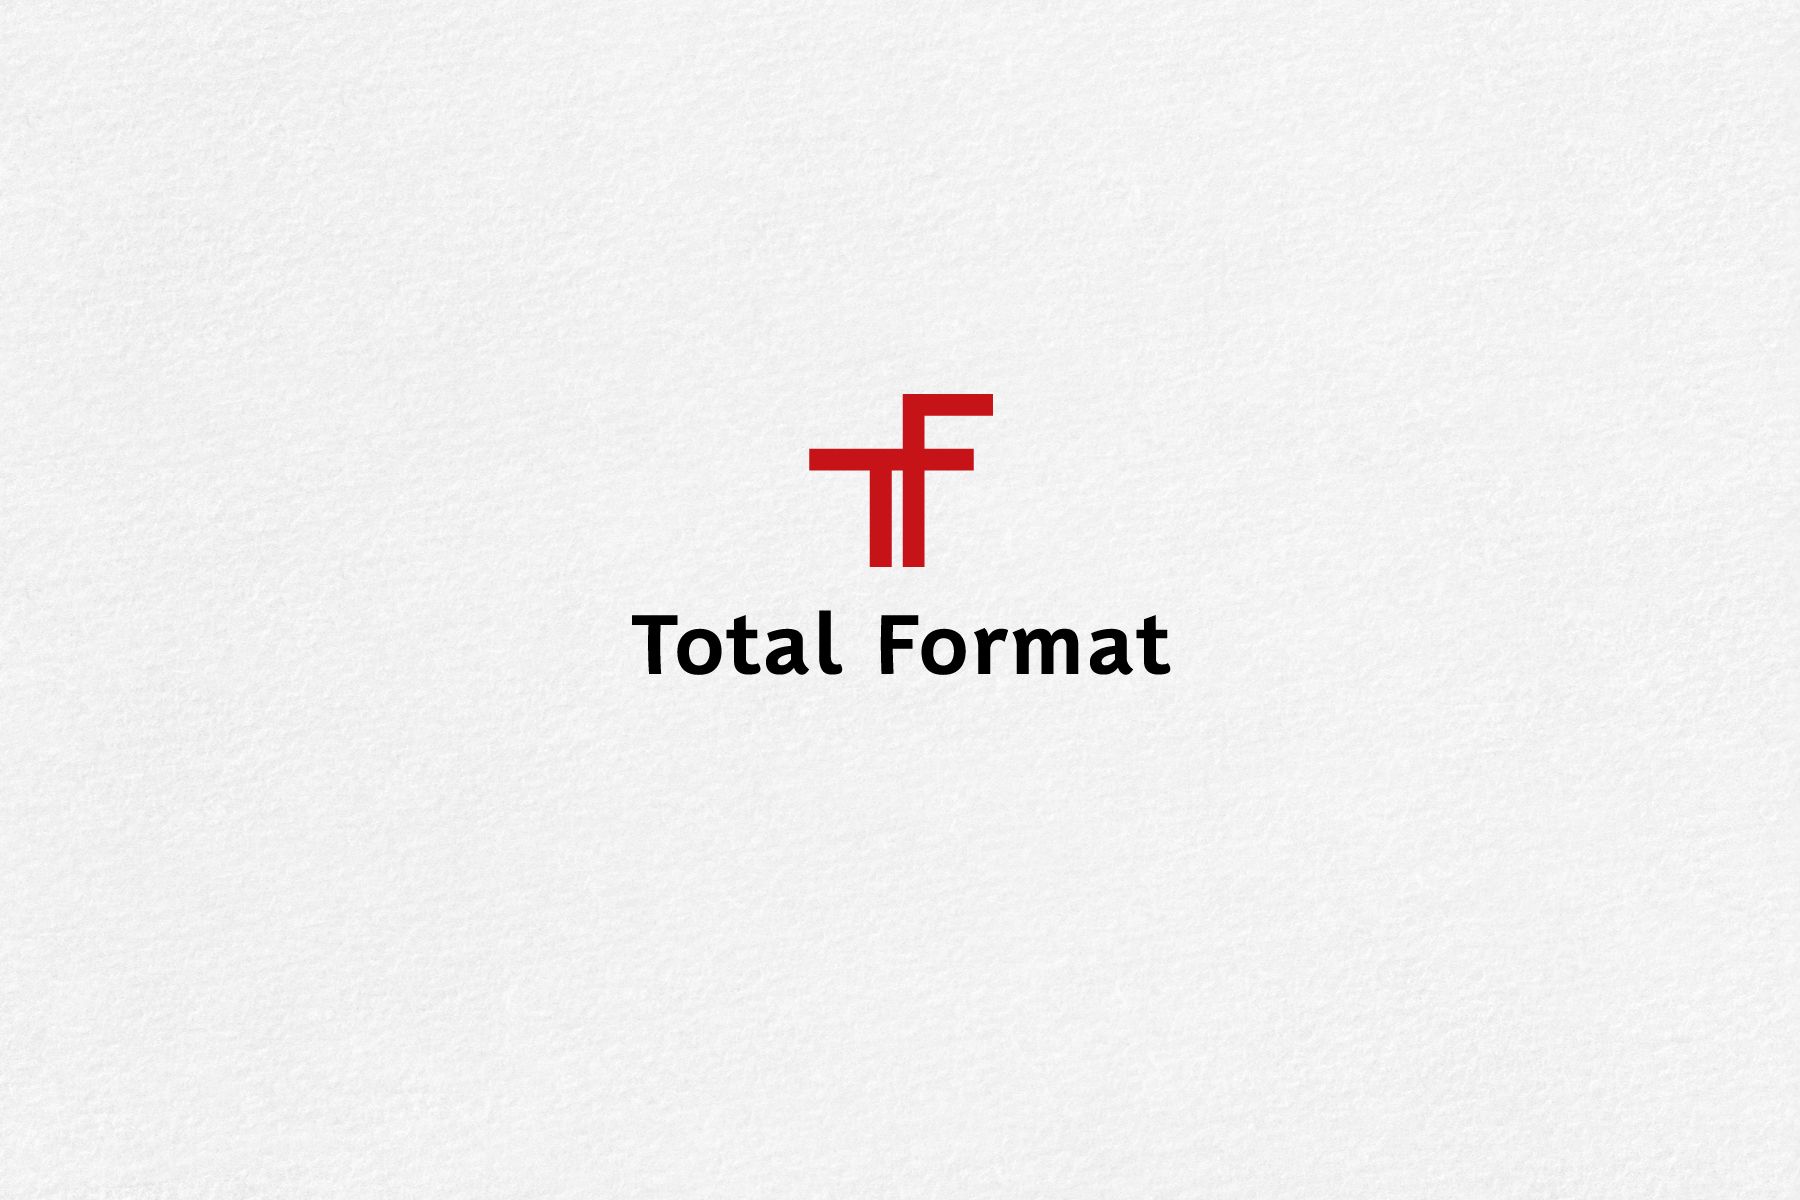 Логотип для Total Format - дизайнер mz777